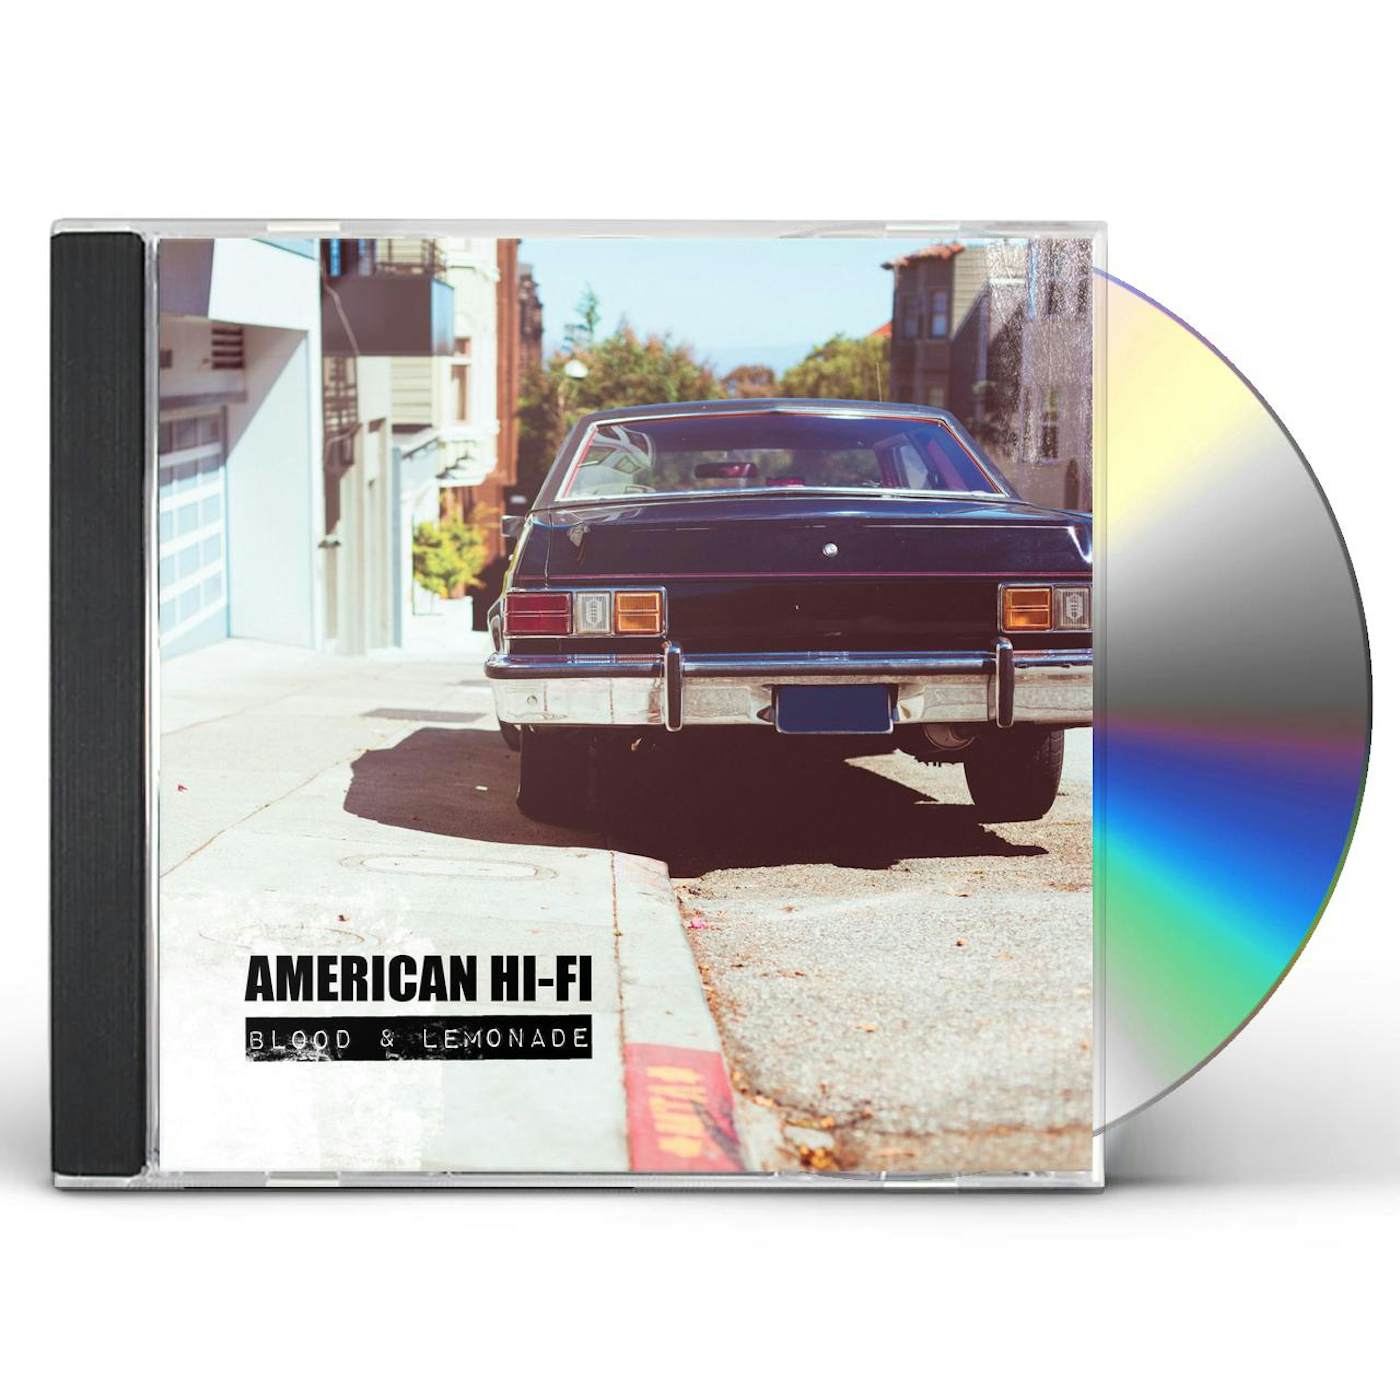 American Hi-Fi BLOOD & LEMONADE CD